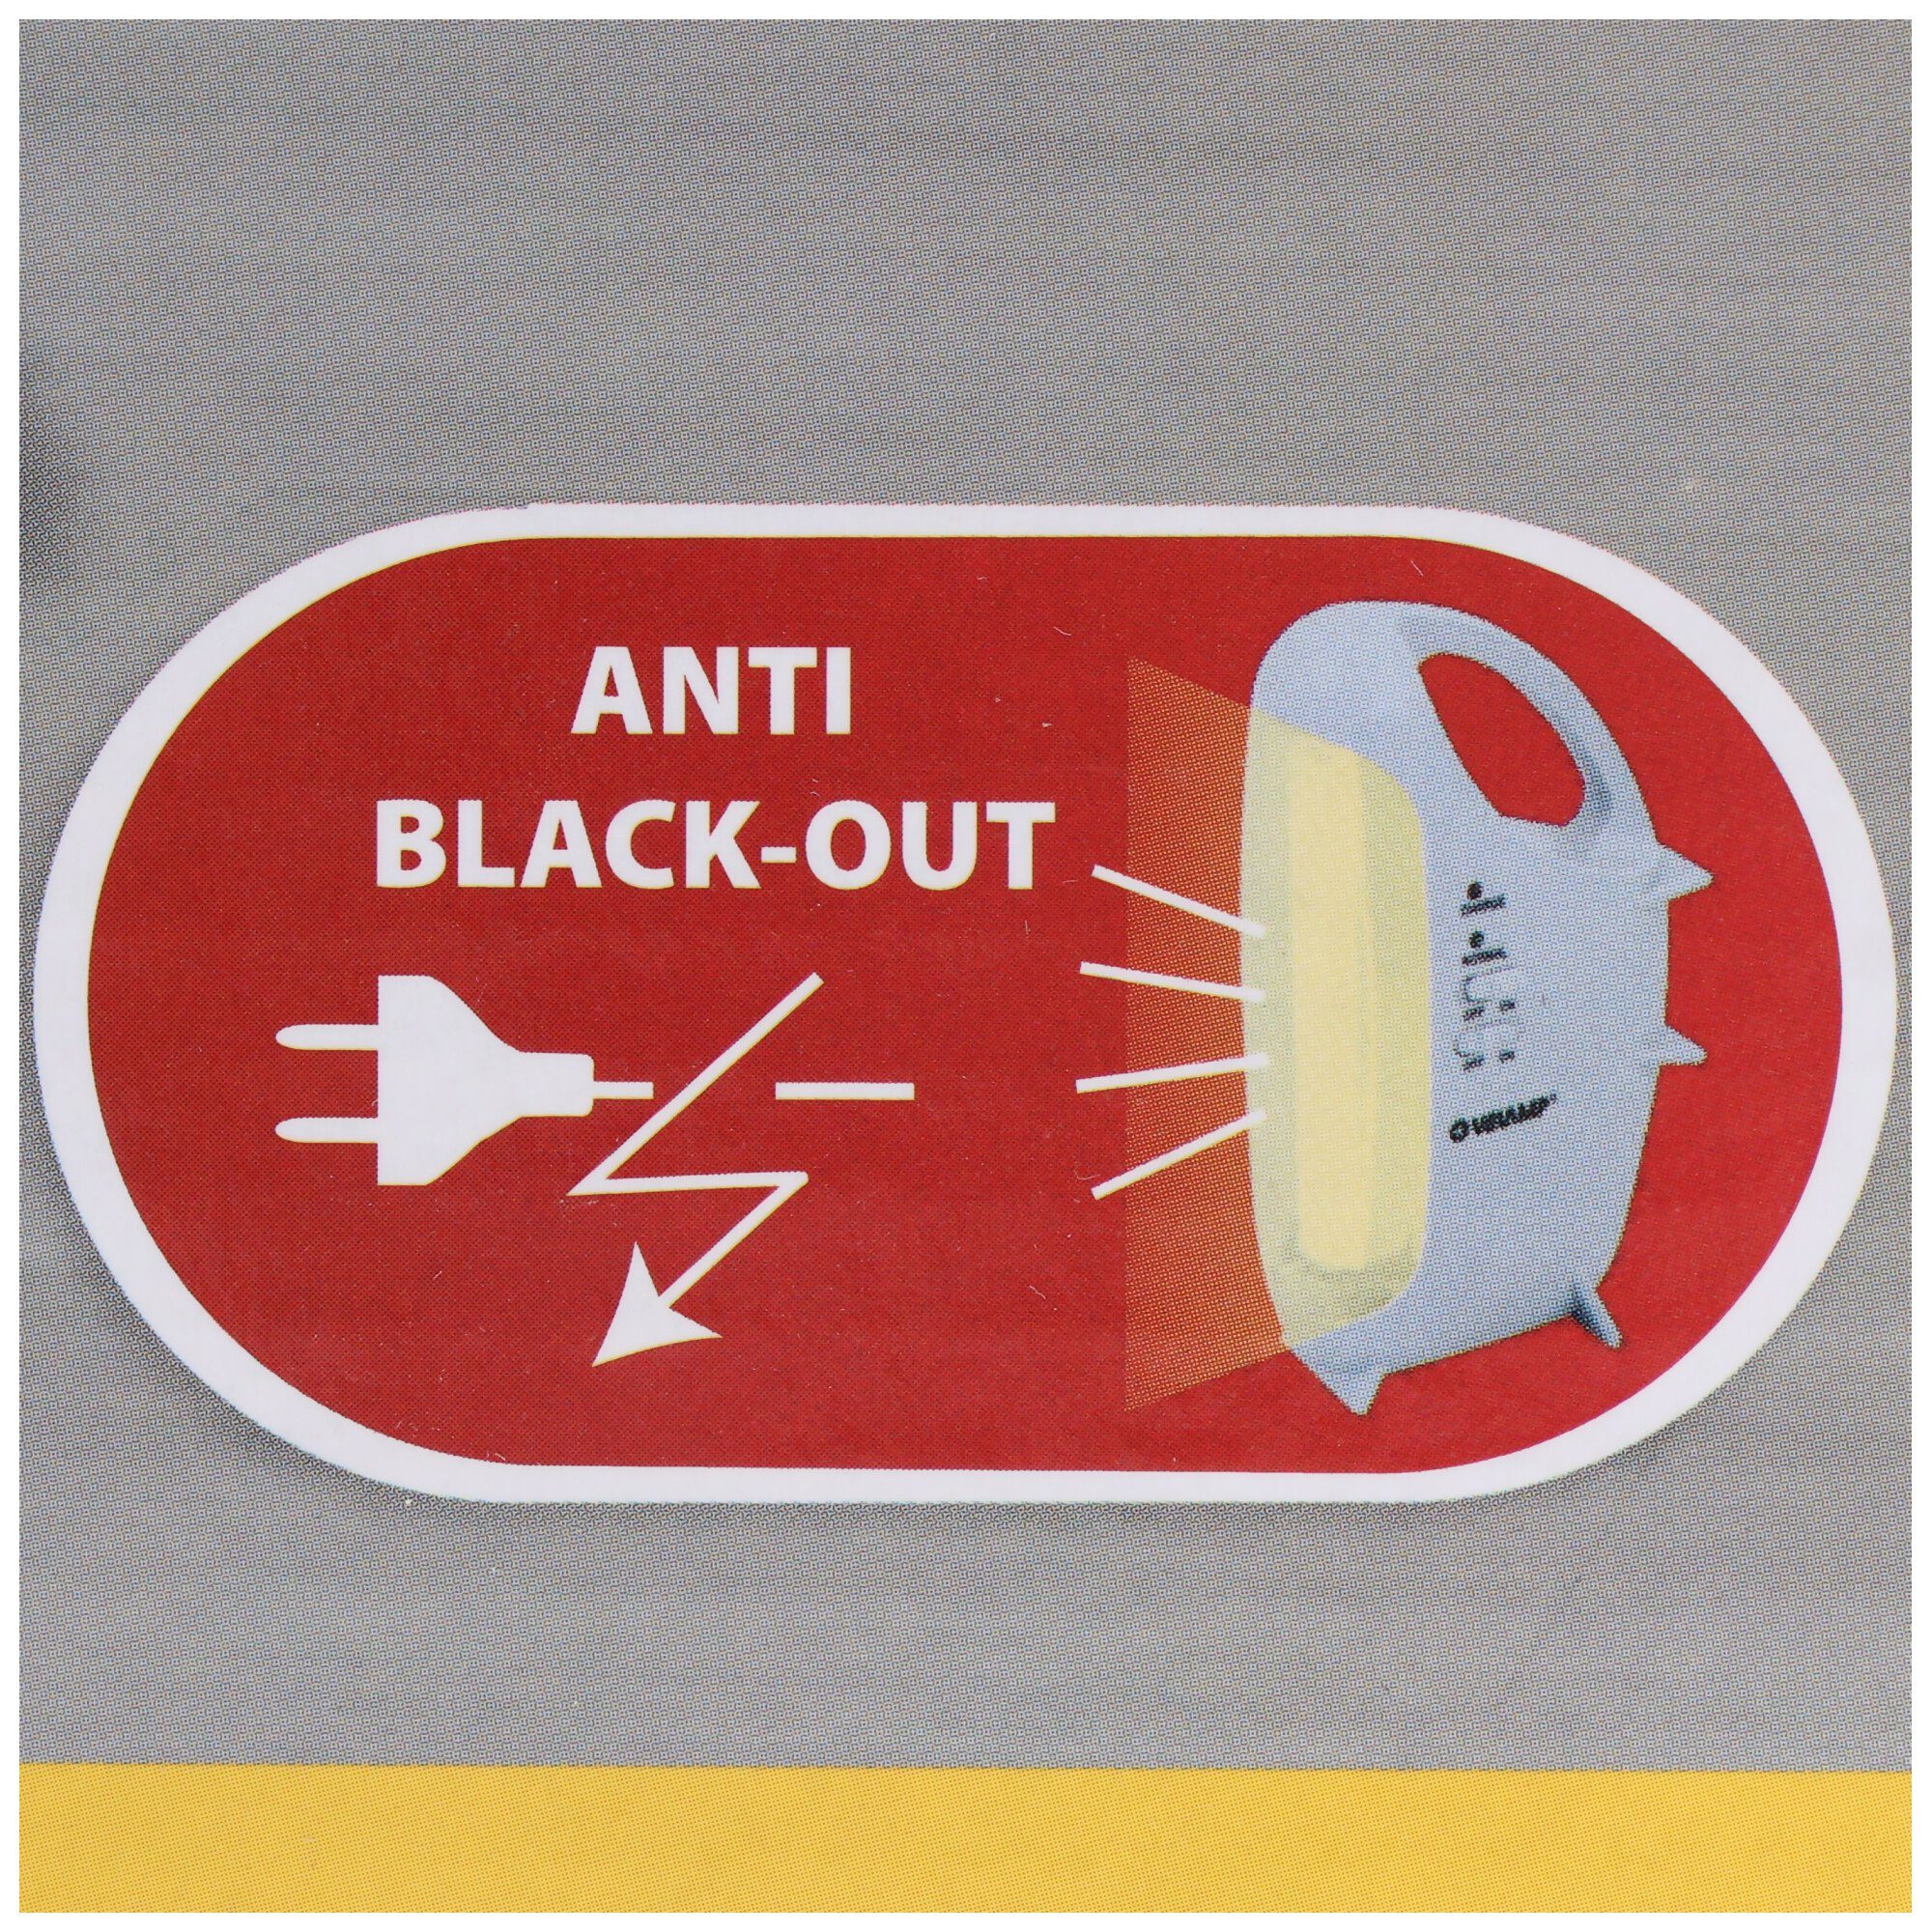 L mit Black-Out tragbare Anti Scheinwerfer Akku-Leuchte LED Velamp Funktion, wiederaufladbare